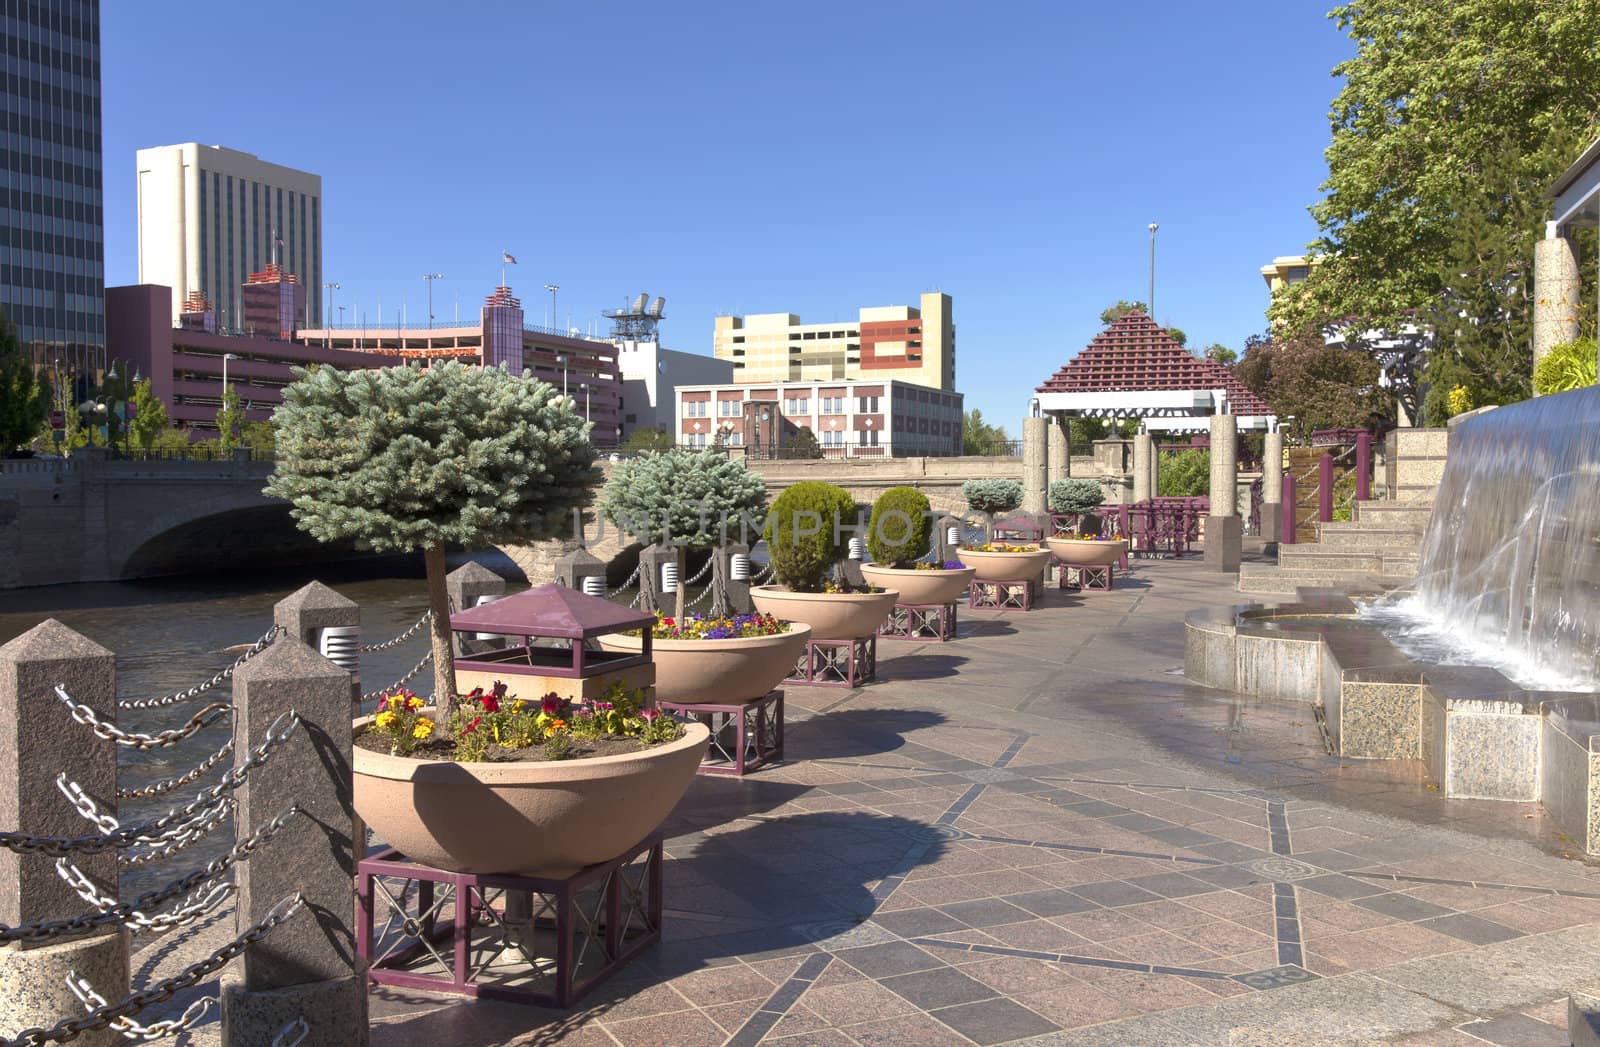 Downtown Reno NV., promenade and park.